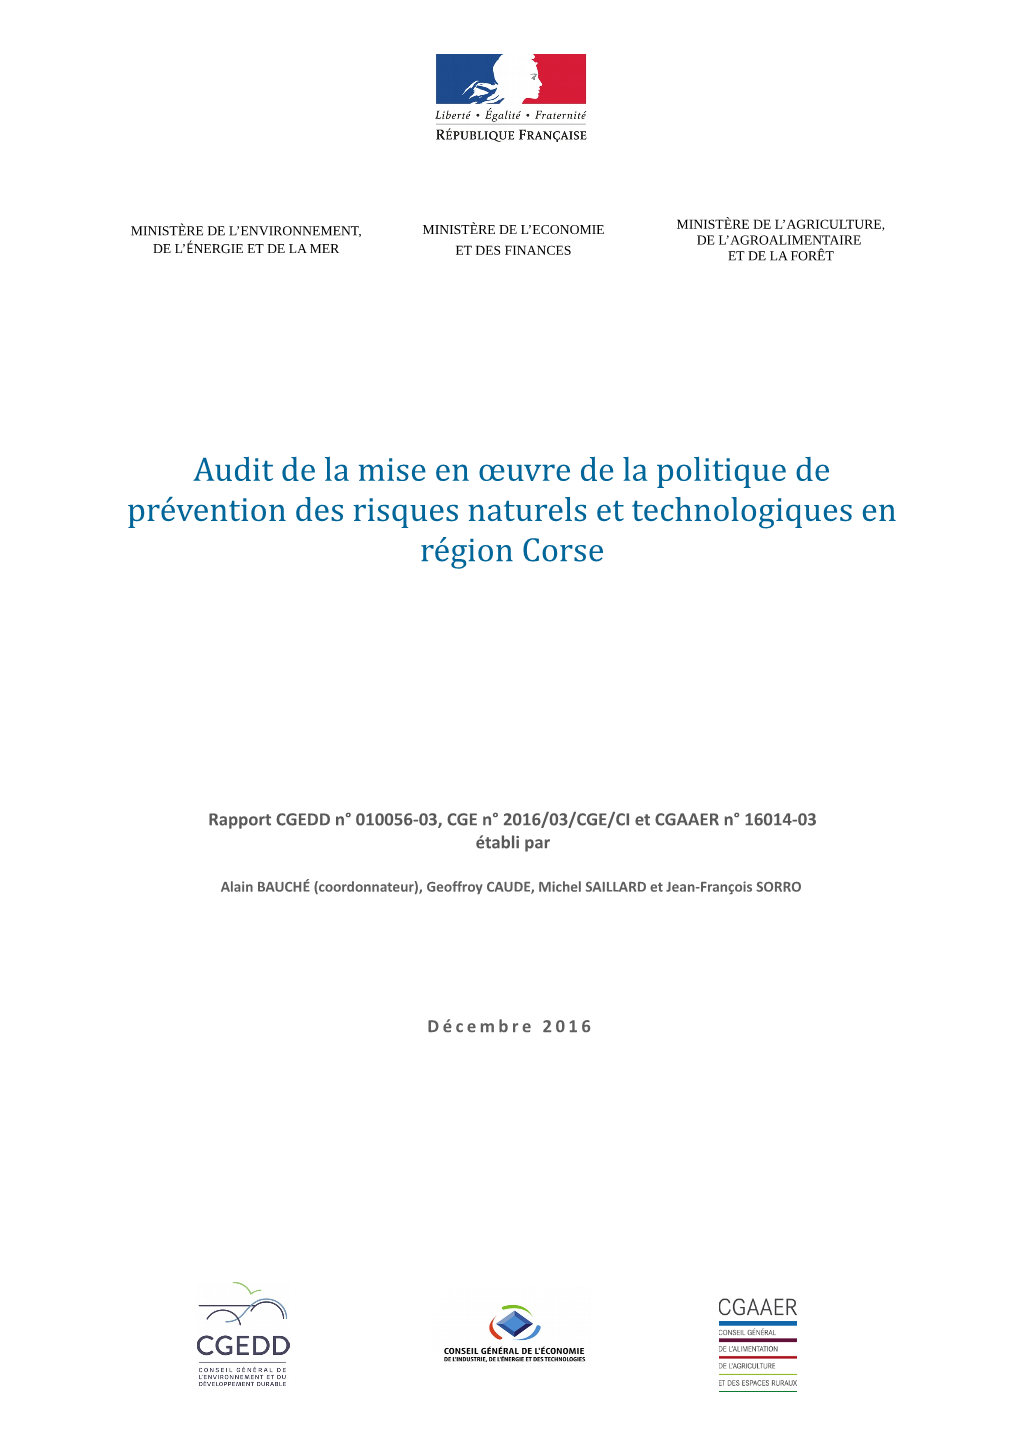 Prevention-Risques-Corse.Pdf